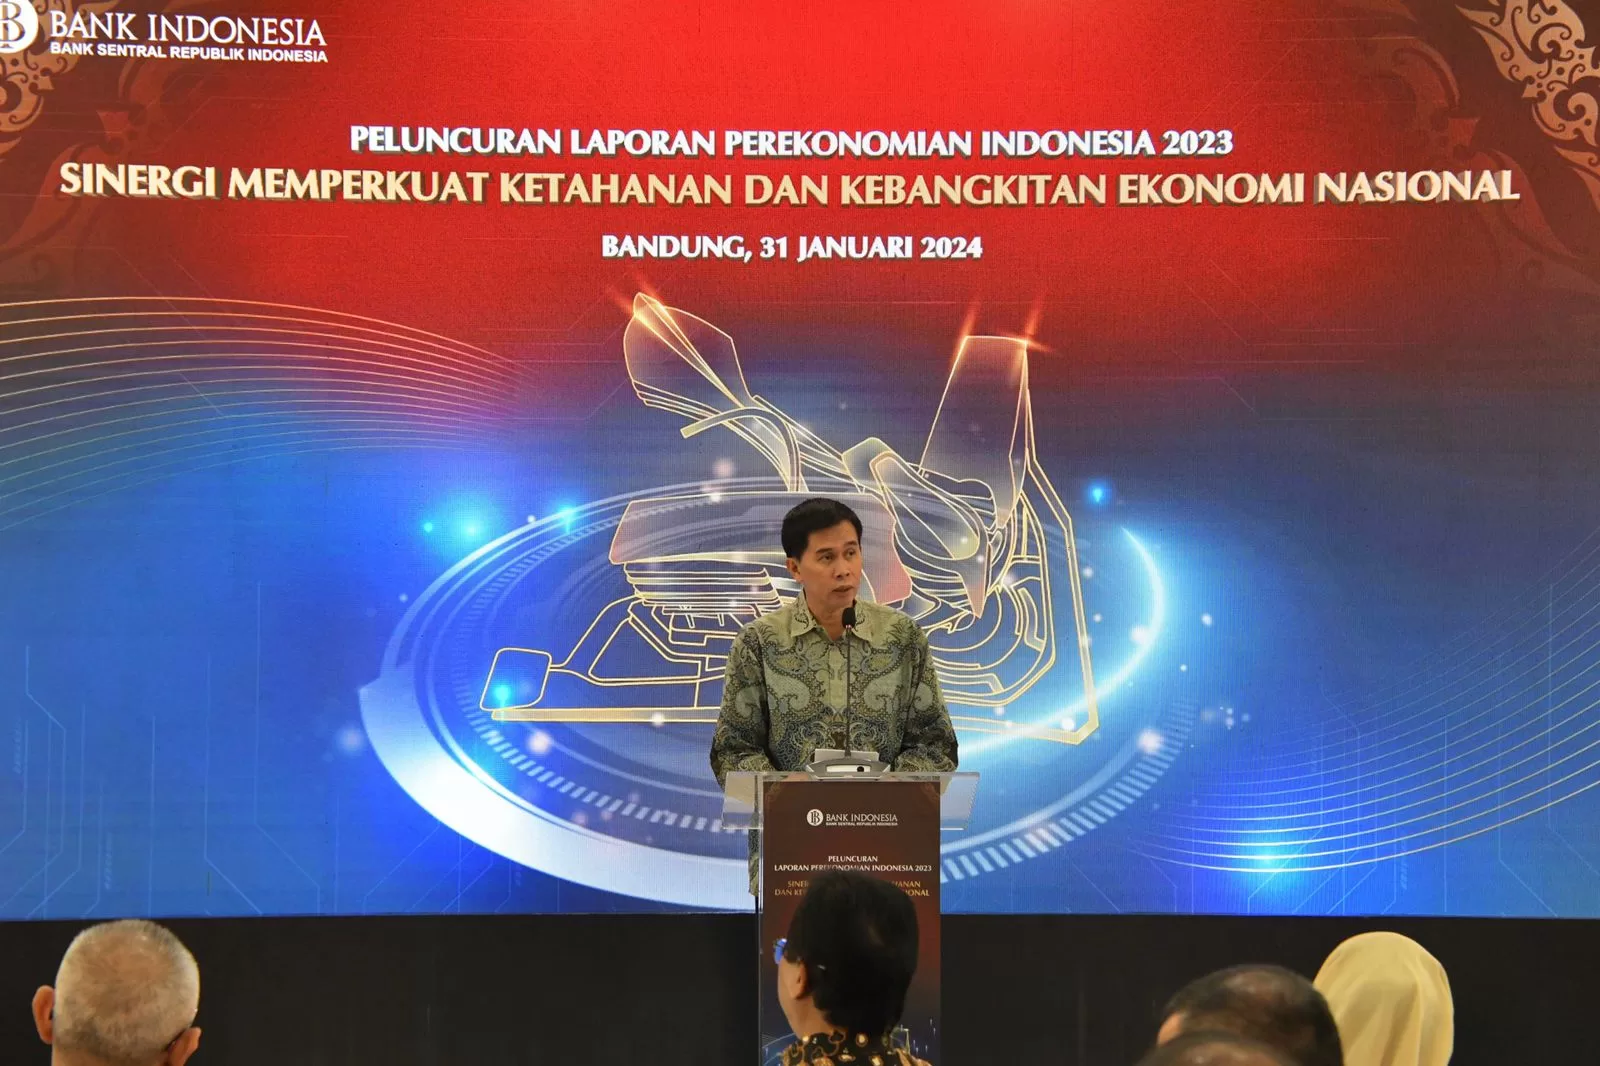 Taufiq Budi Santoso Apresiasi Kerja Kolektif Bank Indonesia 2023 Ekonomi Jabar Meningkat, Pengangguran Turun